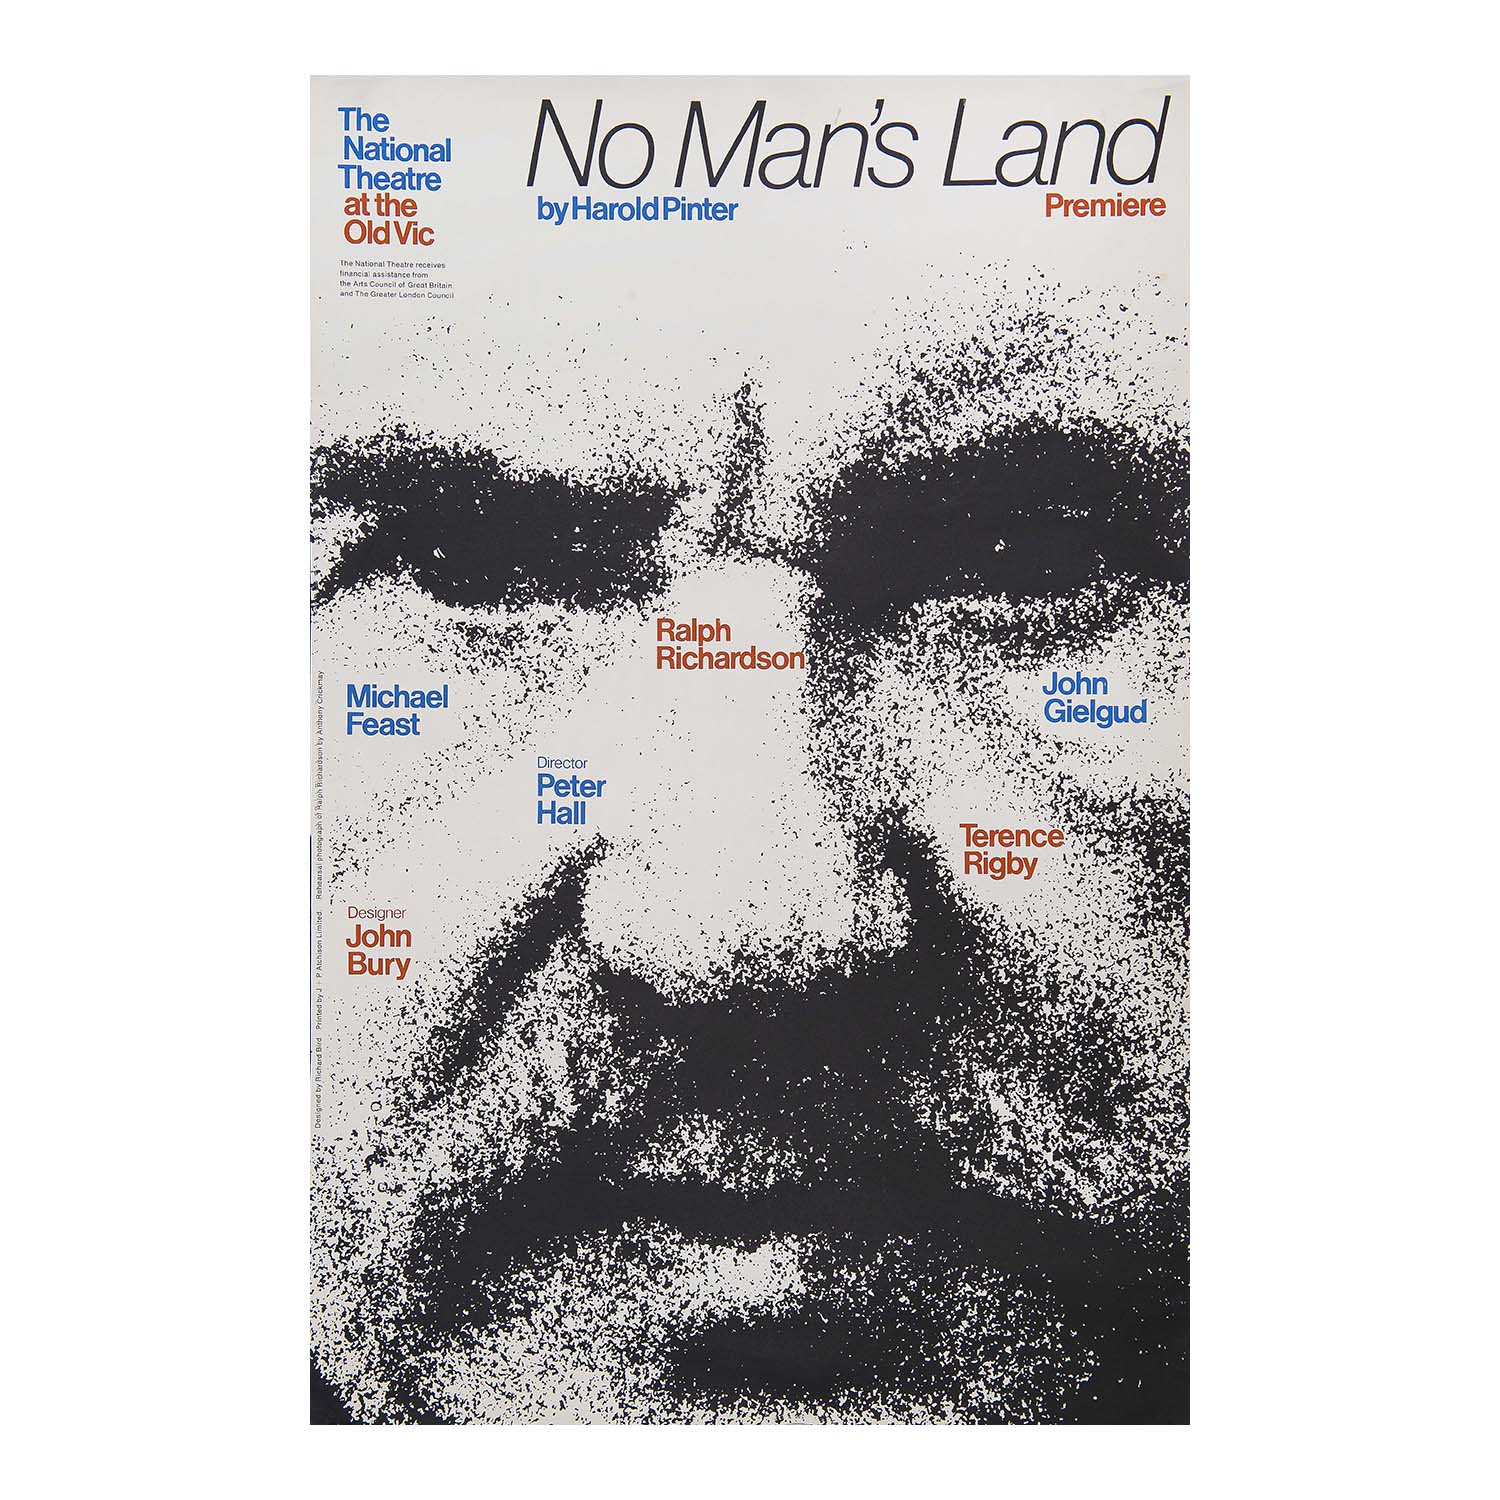 No Man's Land (Ralph Richardson image)